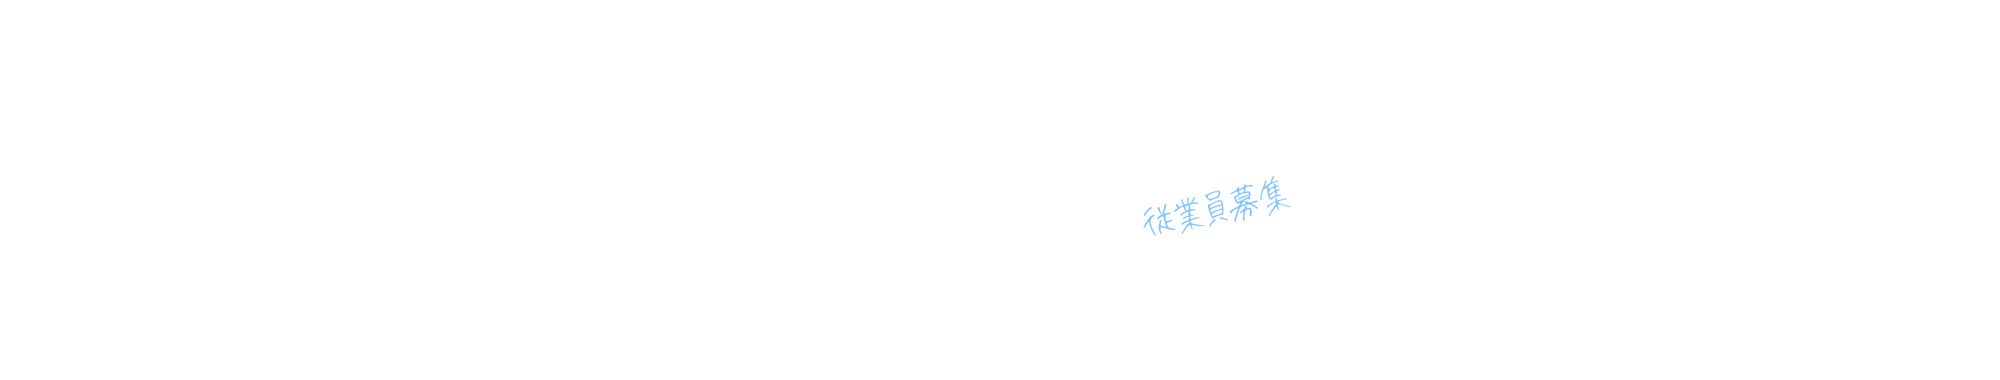 recruit_bnr